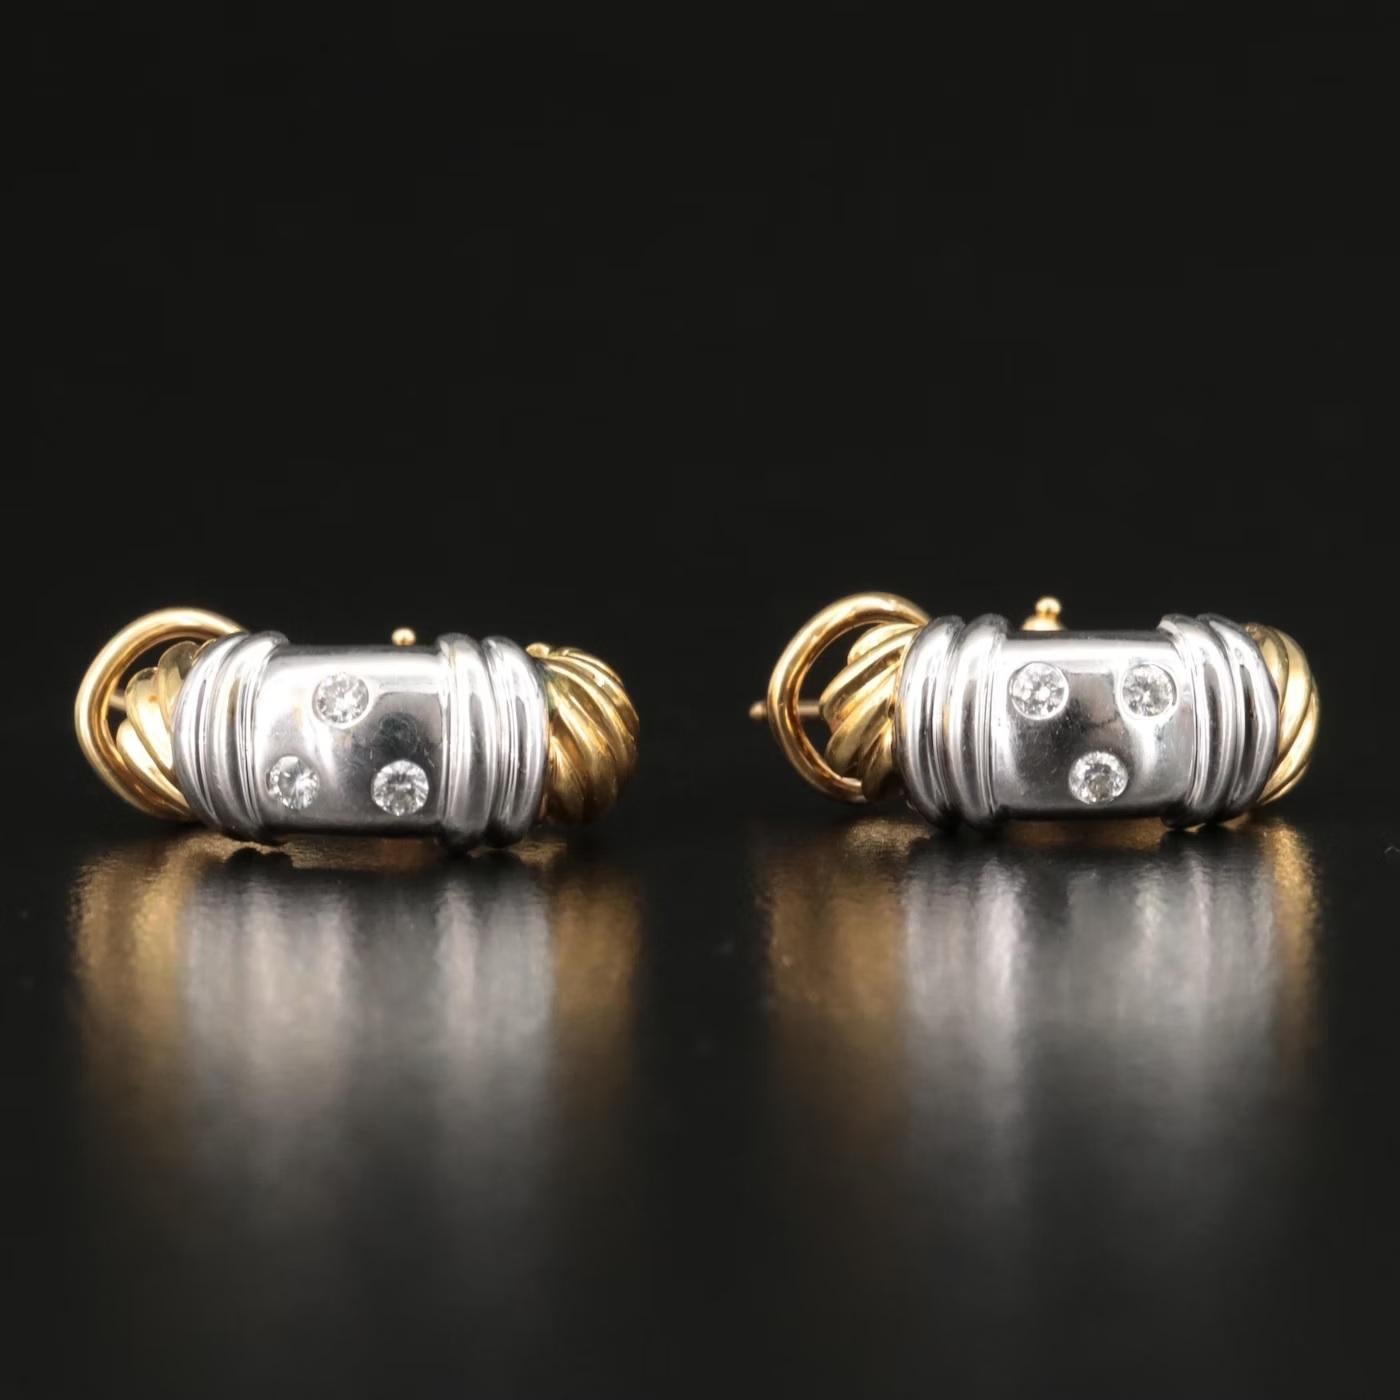 $7500 / David Yurman / 18K Gold Two-Tone Diamond Metro J Hoop Earrings / LUXURY For Sale 1